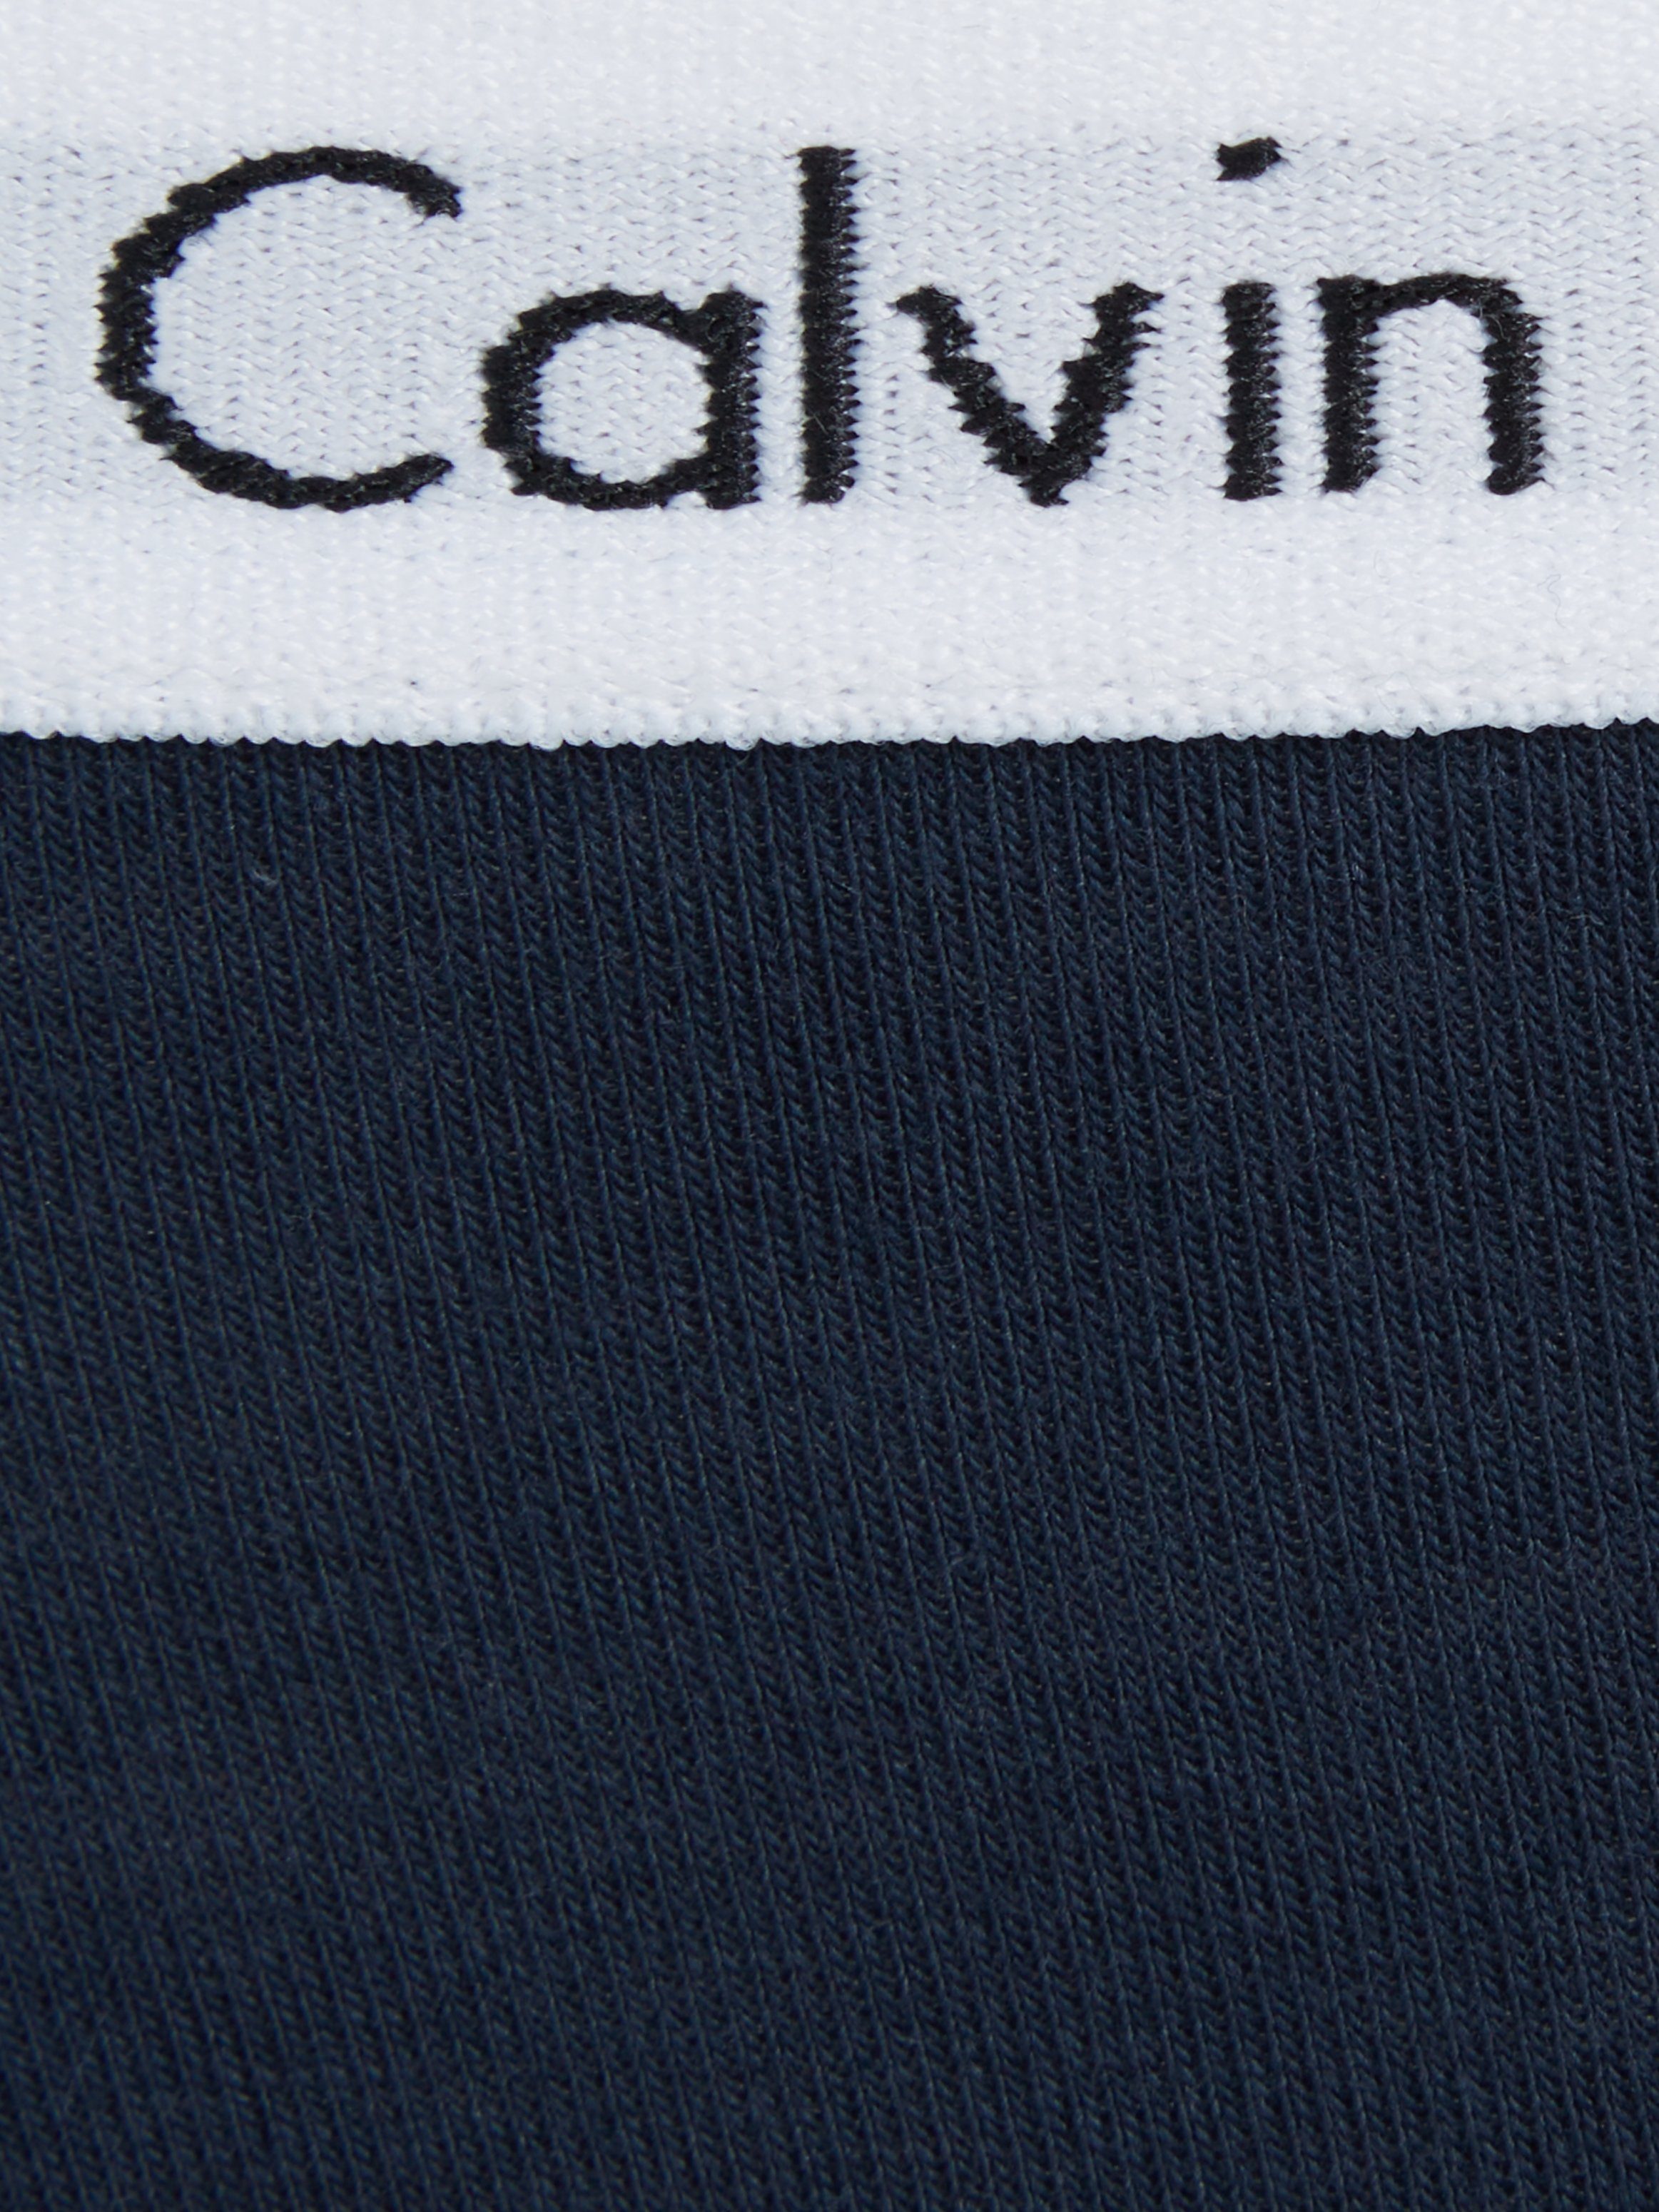 Calvin Klein Underwear Bikinislip dunkelblau mit Logobund